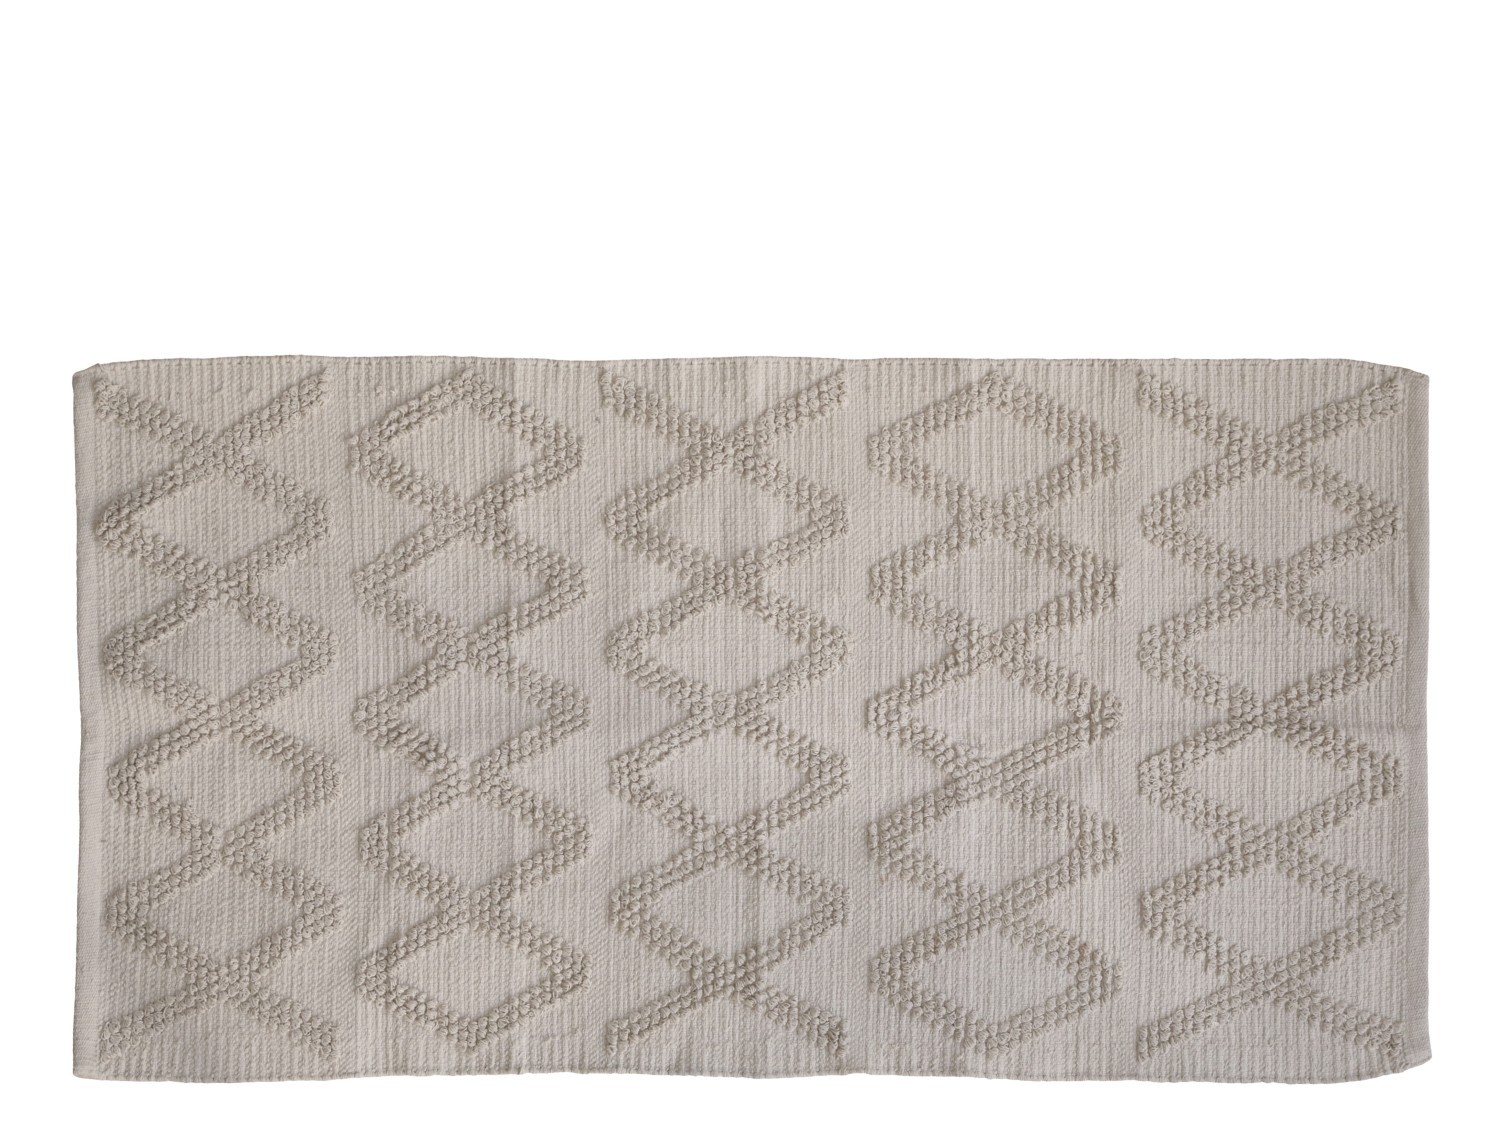 Béžový bavlněný koberec se vzorem  Mig - 75*150 cm Chic Antique